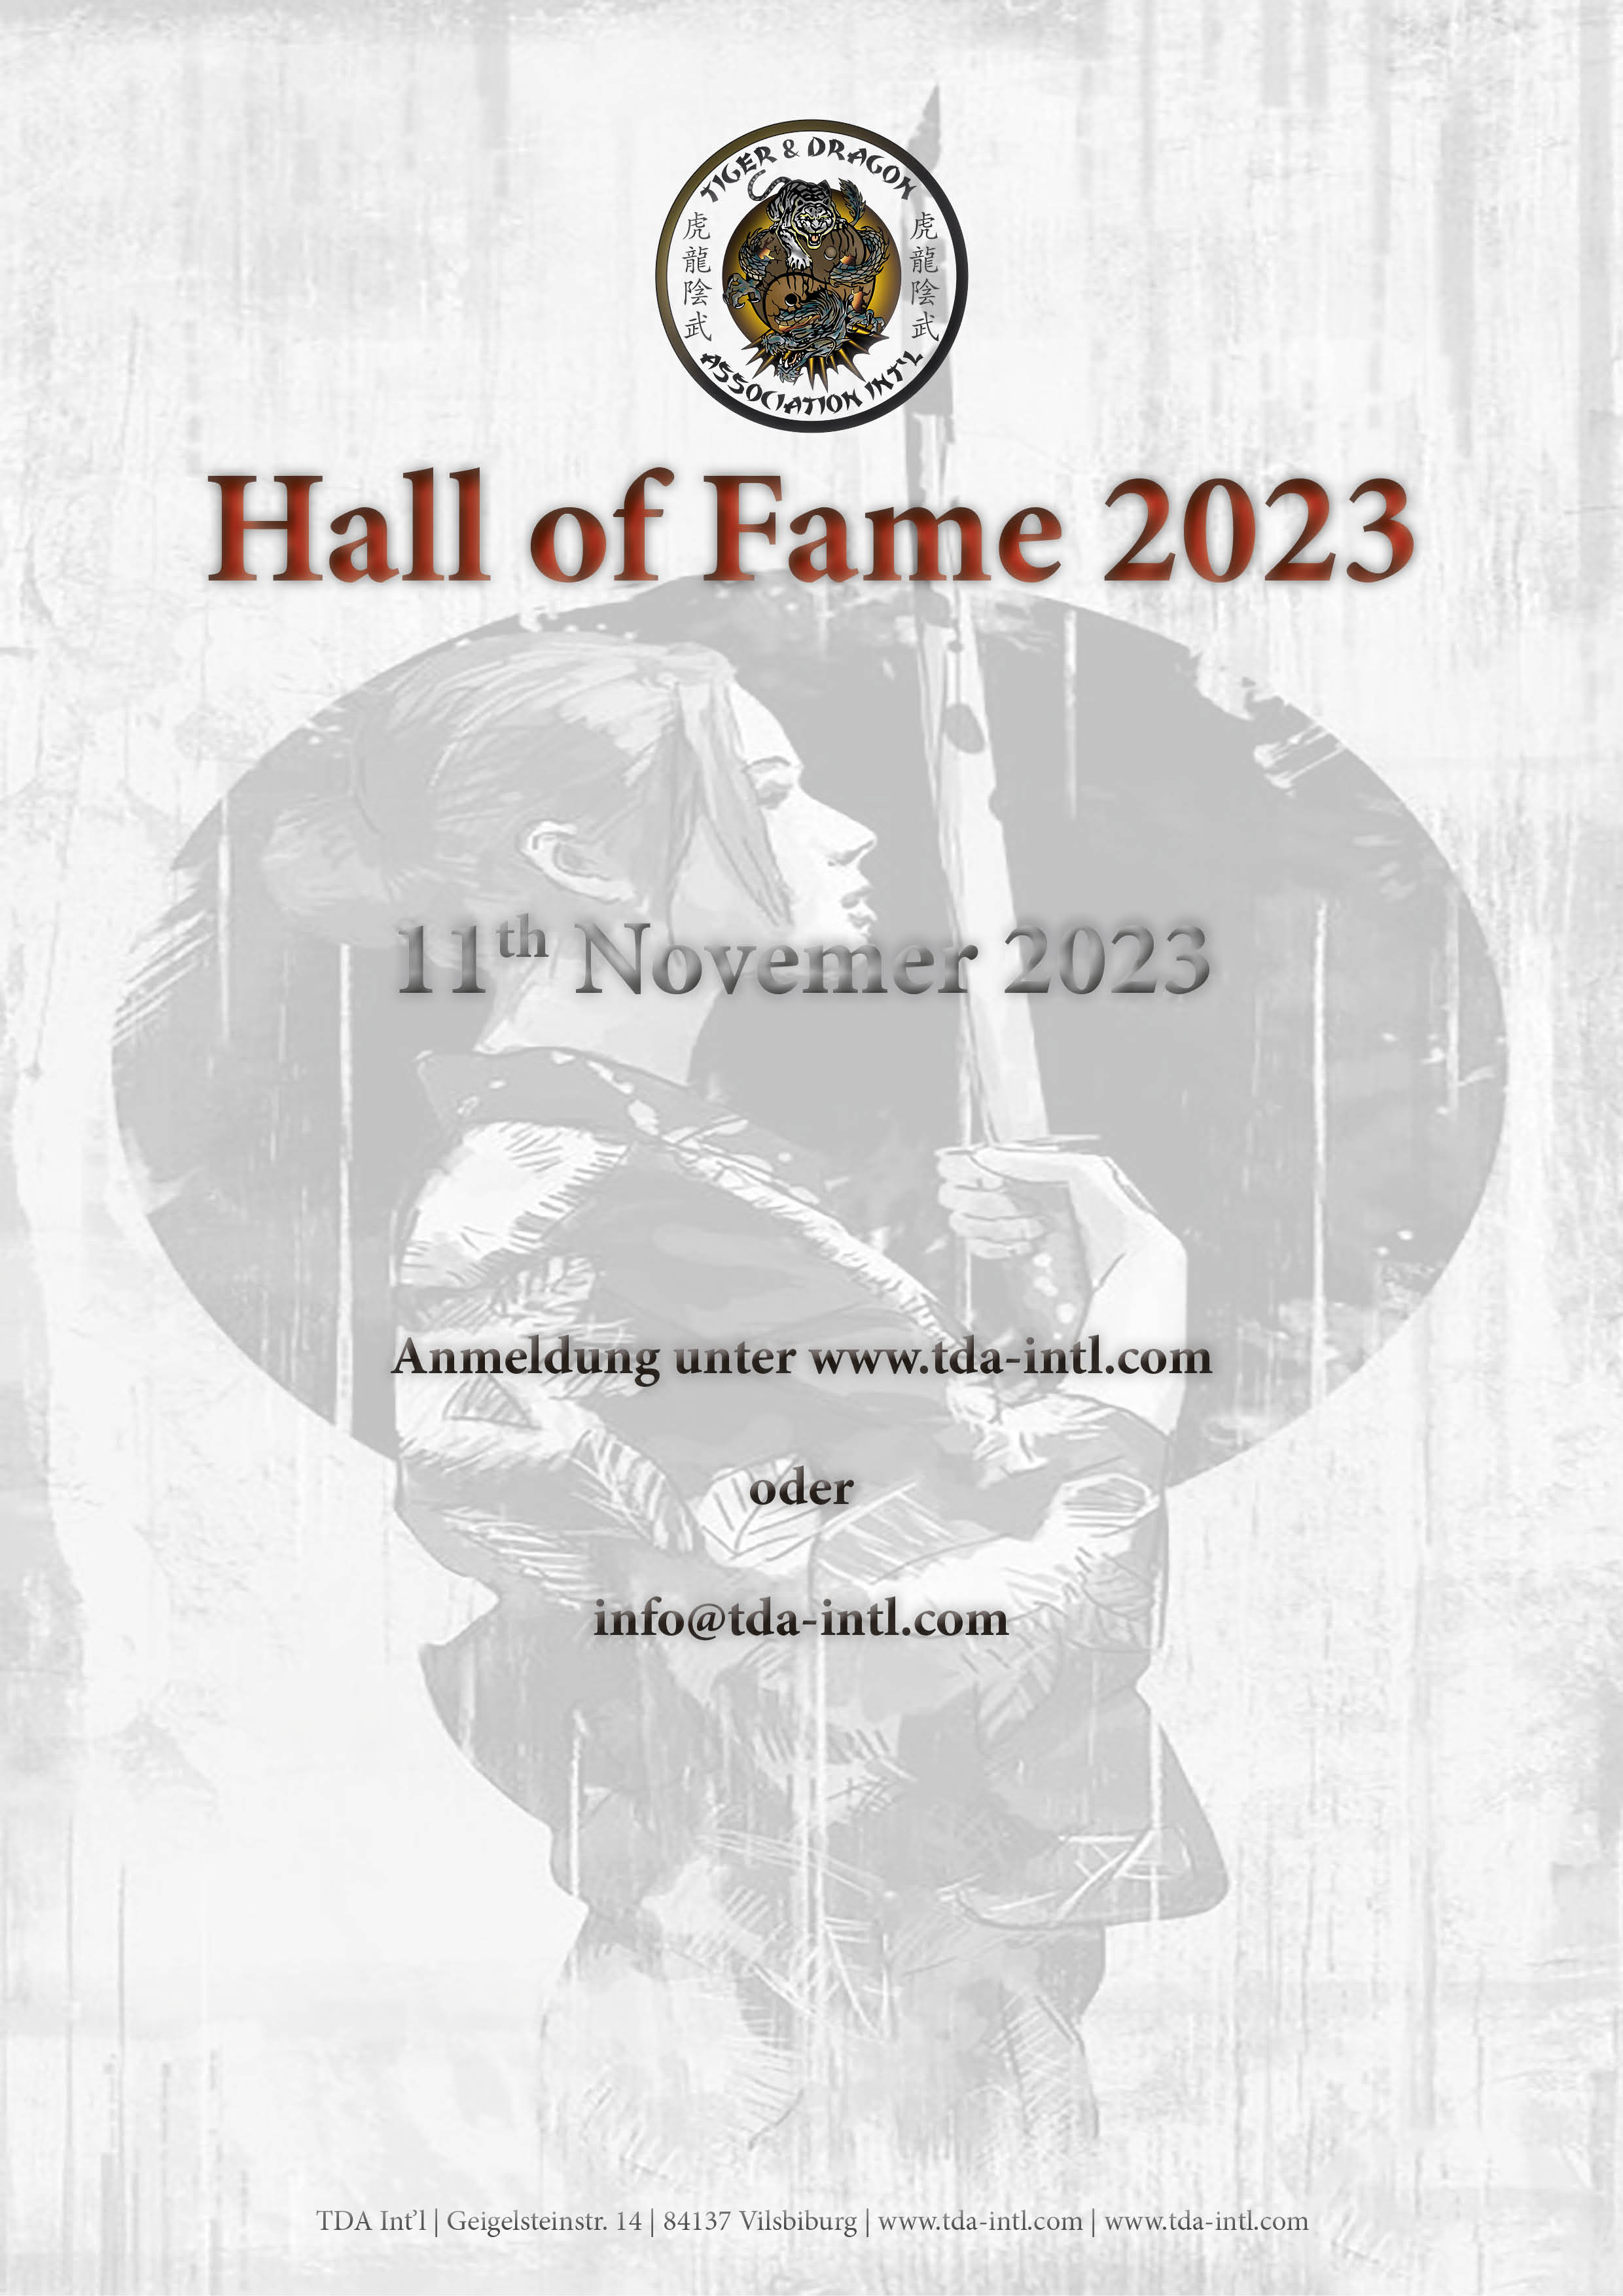 7th Hall of Fame 2023